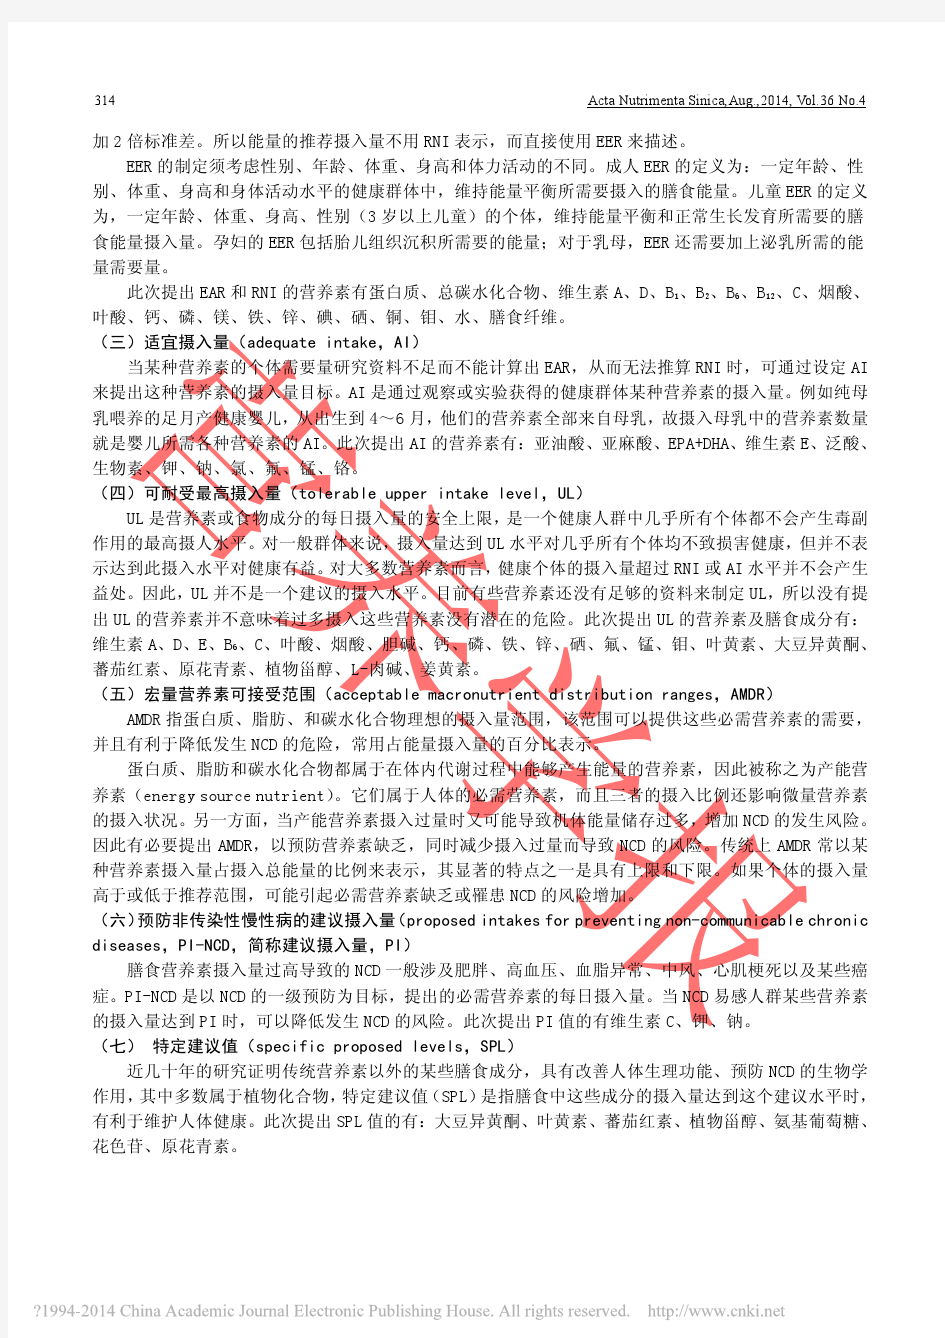 中国居民膳食营养素参考摄入量2013修订版